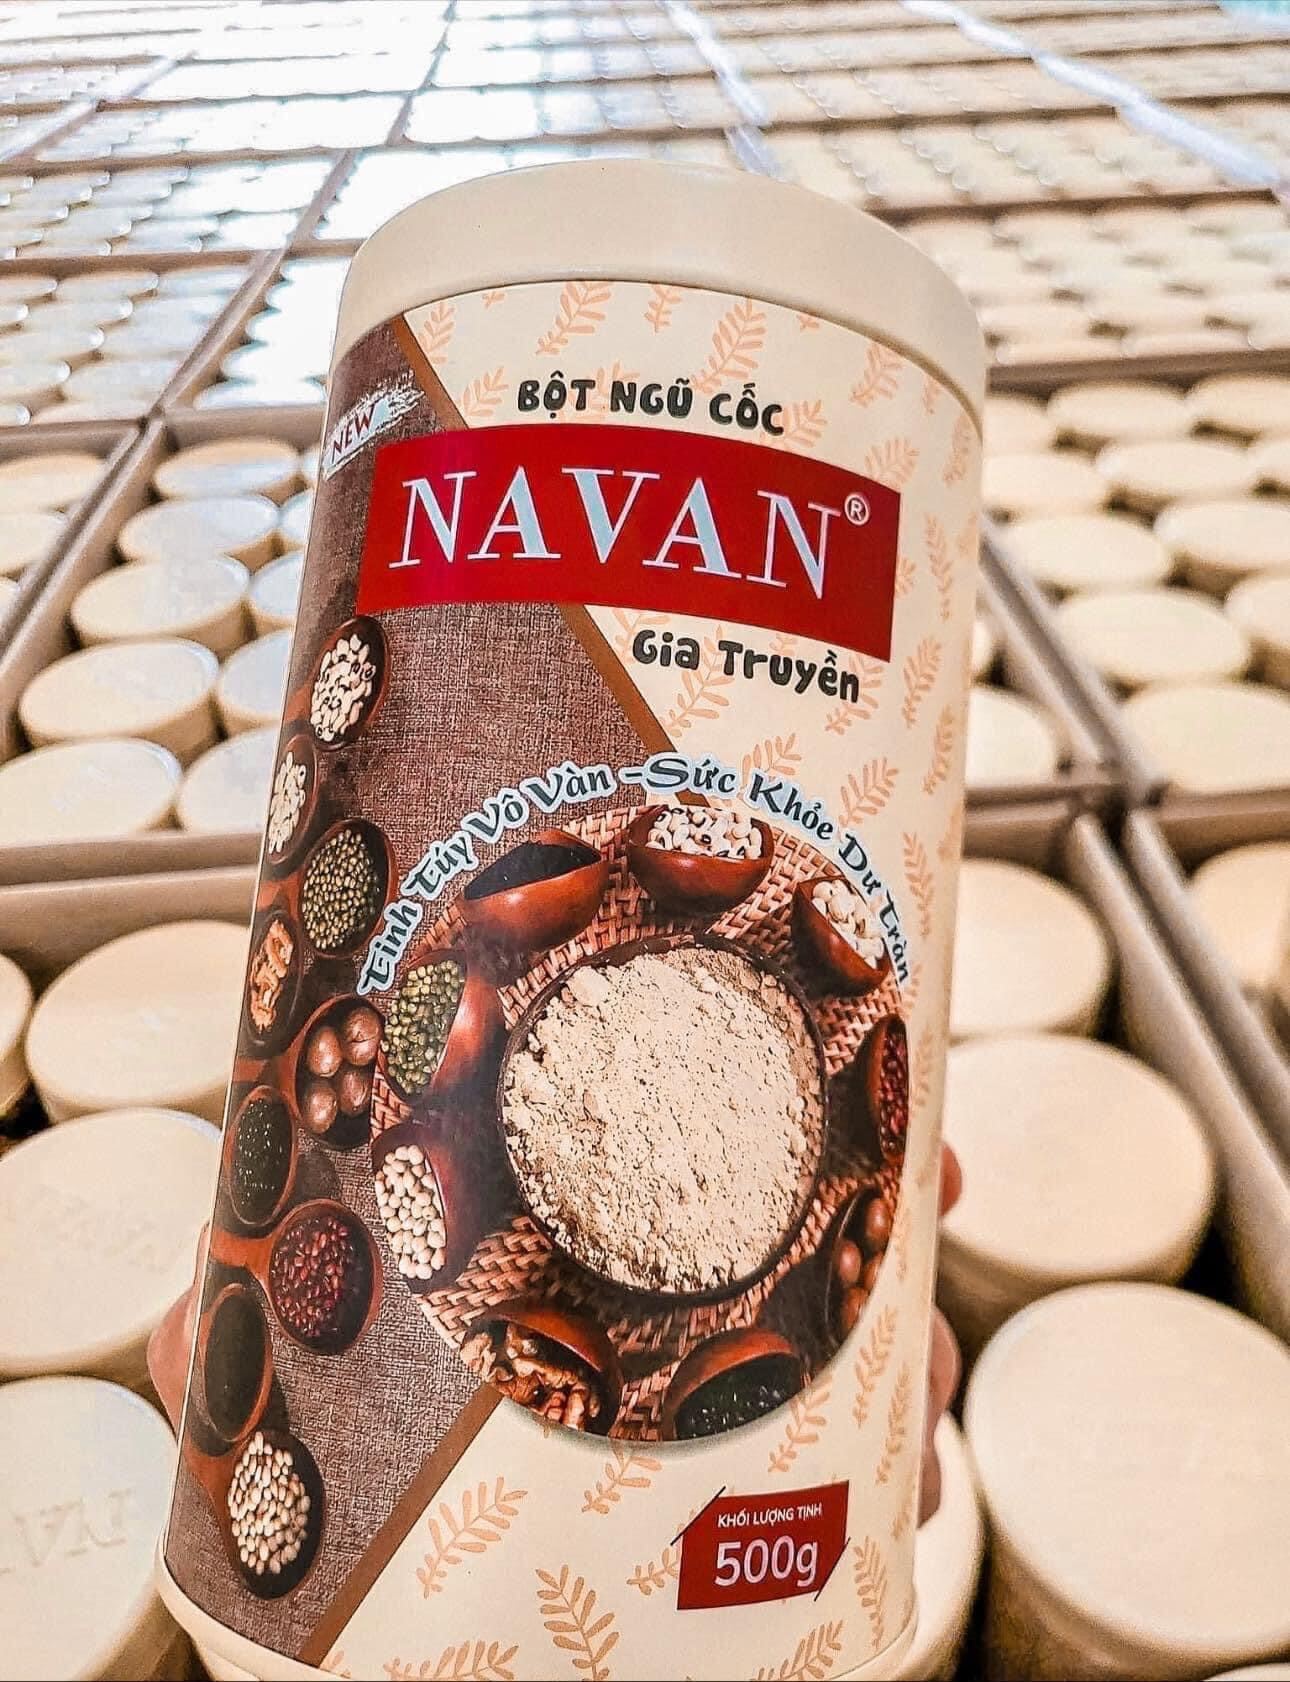 Bột ngũ cốc lợi sữa Navan cho mẹ bầu - 9 loại hạt quý giúp da đẹp, ngủ ngon